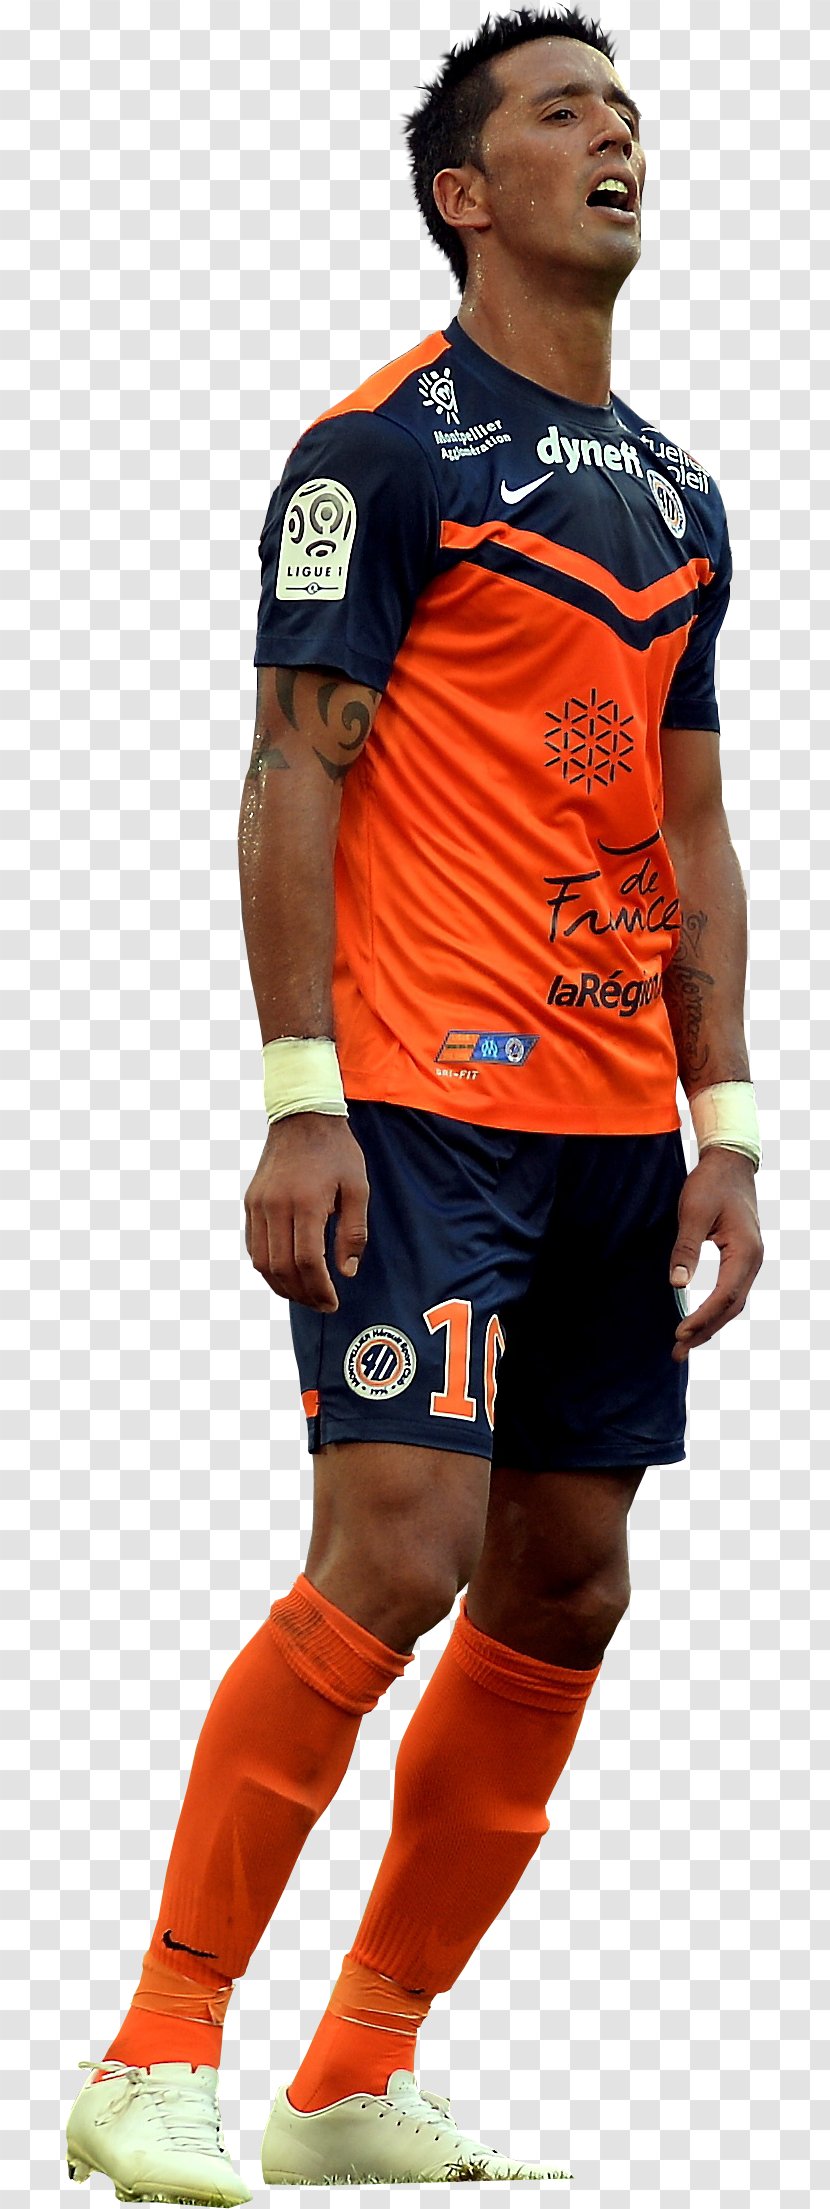 Football Player - Tshirt - Trunks Waist Transparent PNG